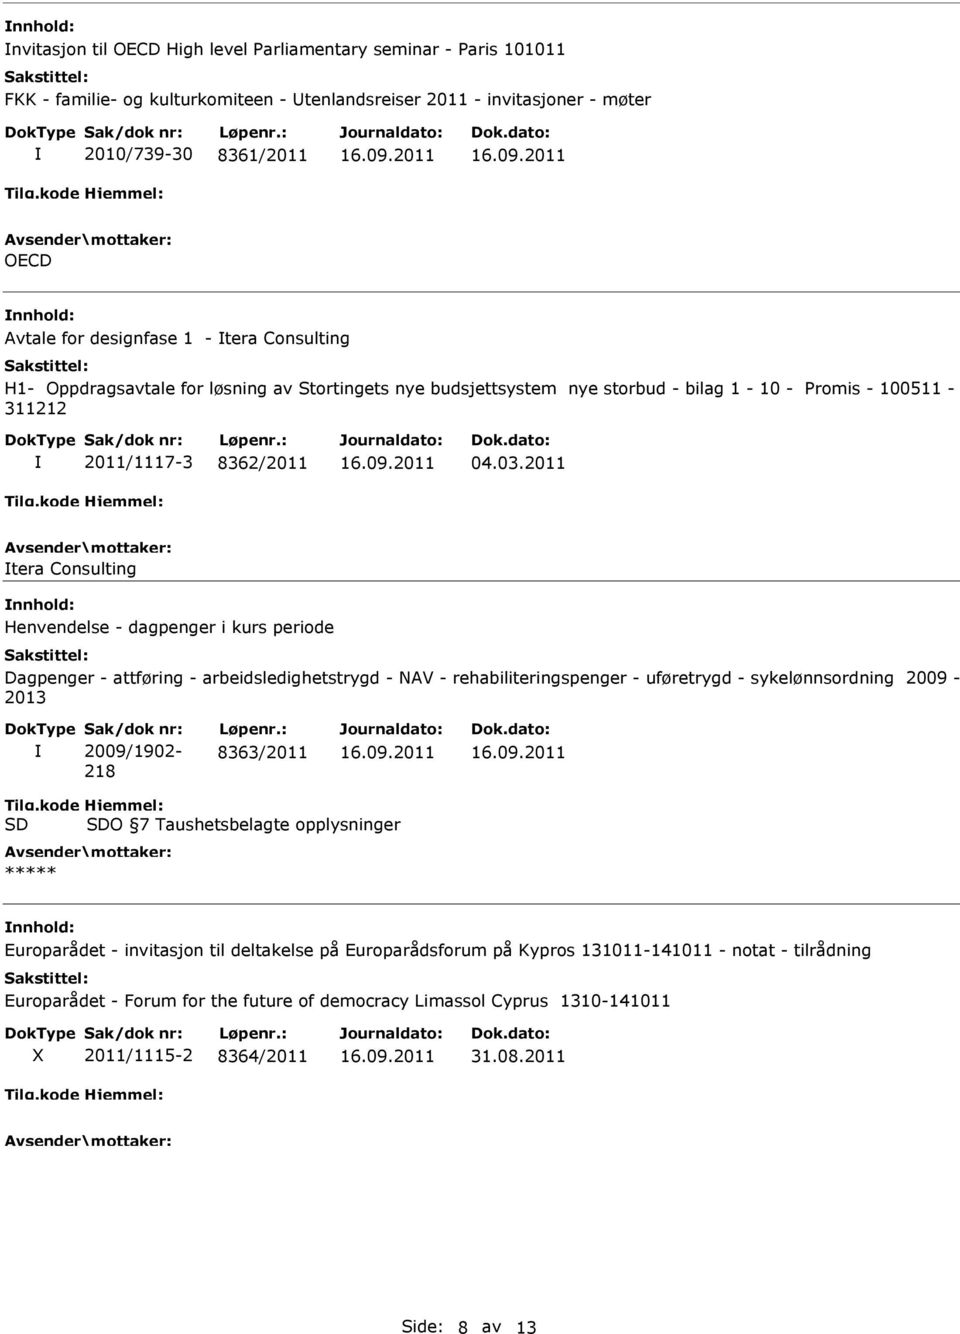 2011 tera Consulting Henvendelse - dagpenger i kurs periode Dagpenger - attføring - arbeidsledighetstrygd - AV - rehabiliteringspenger - uføretrygd - sykelønnsordning 2009-2013 2009/1902-218